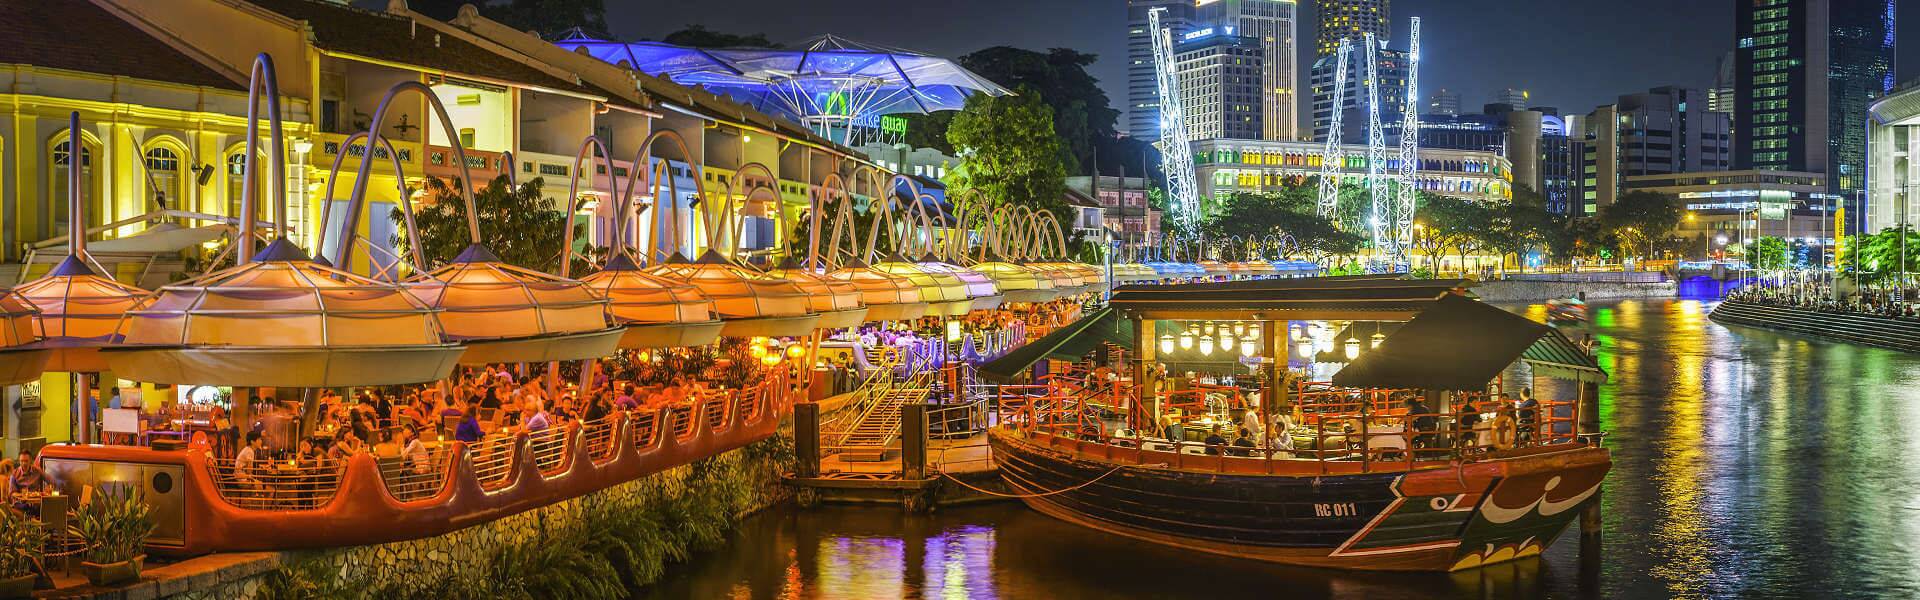 Singapur Sehenswürdigkeiten, die TOP Attraktionen vom Singapur